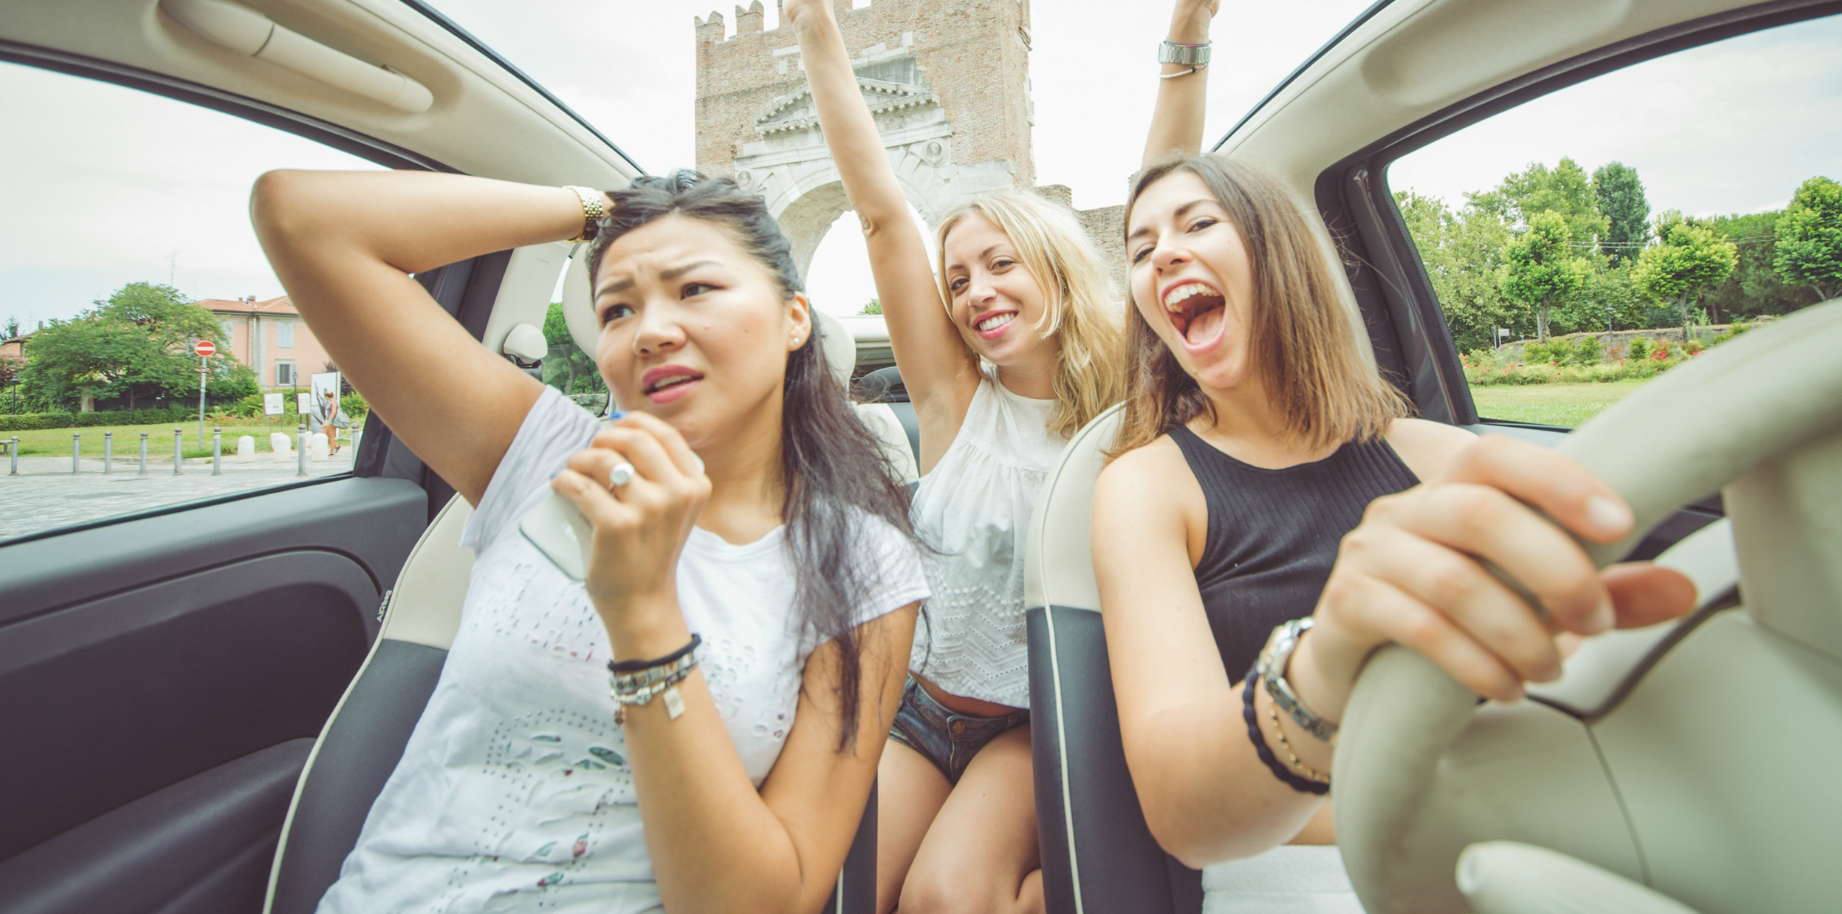 Att sjunga och dansa i bilen kan nu bli olagligt i Storbritannien.